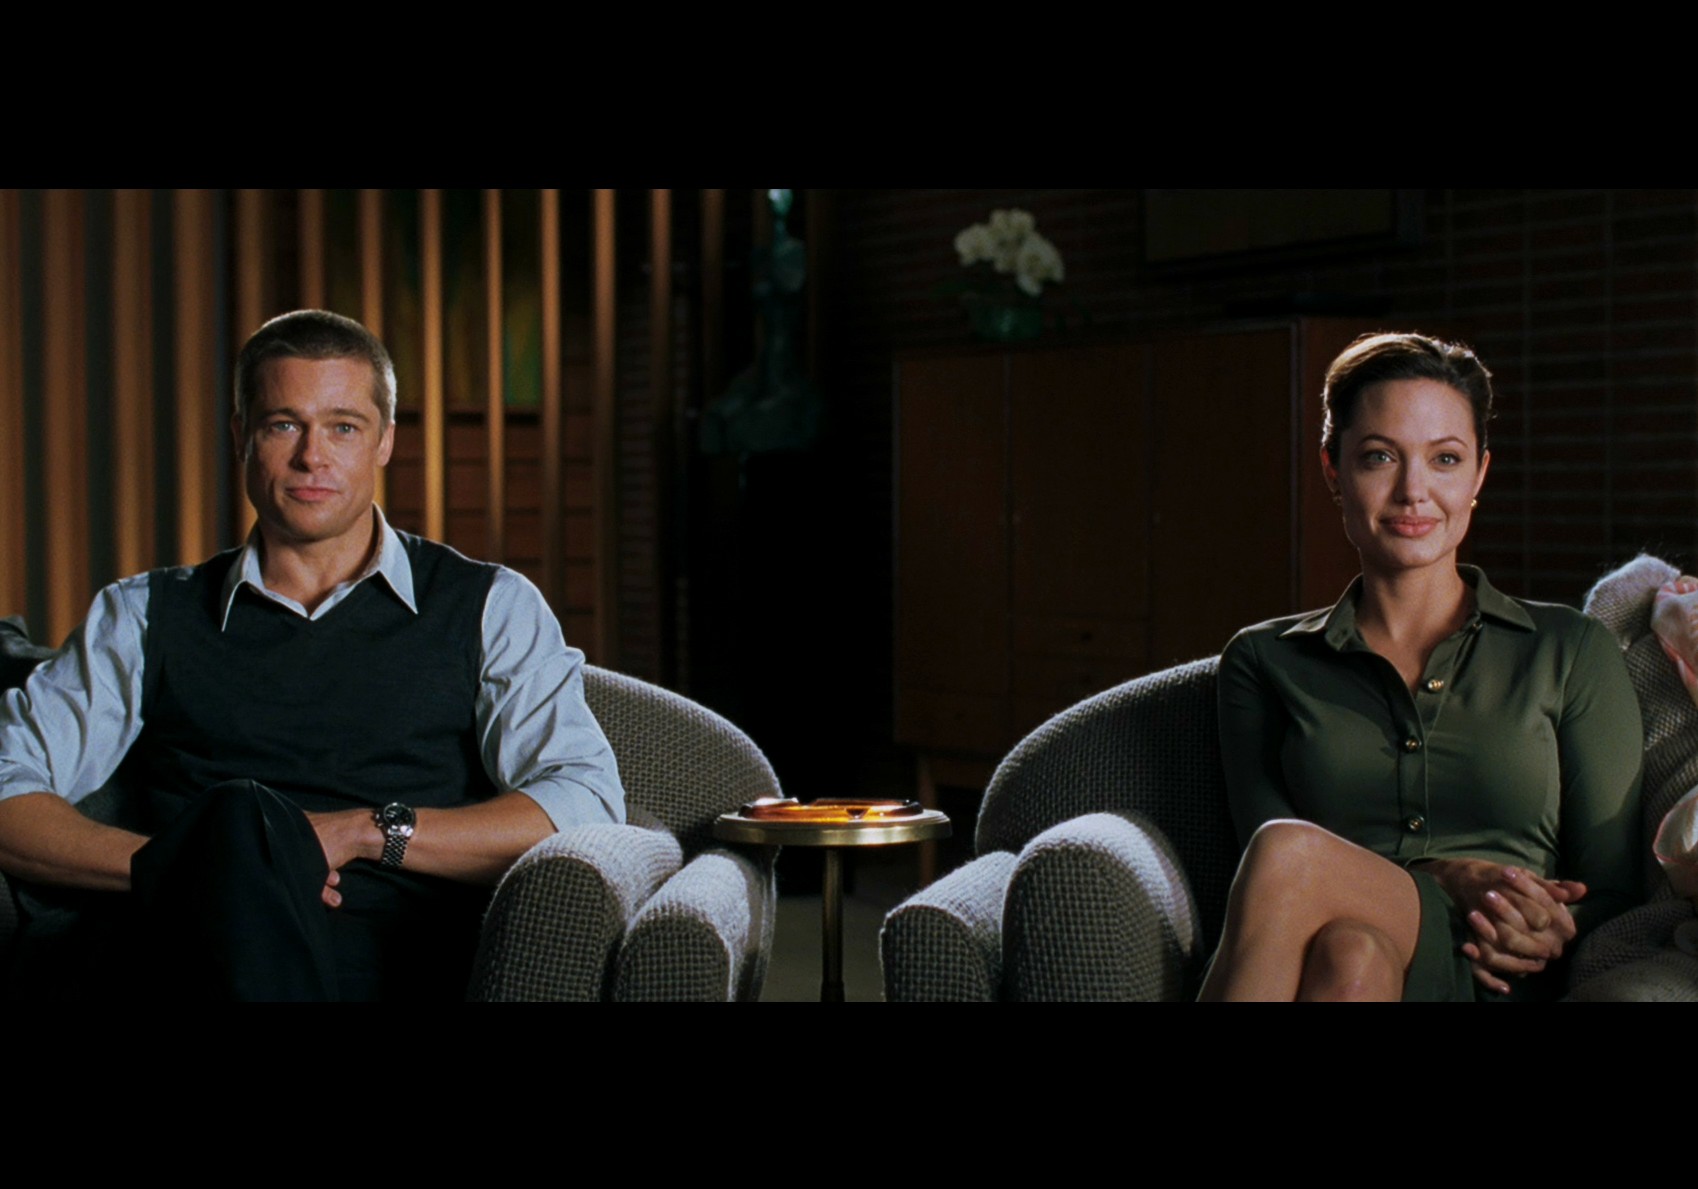 Quem diria... Já faz nove anos que esses dois passaram dos fictícios 'Sr. & Sra. Smith' para o casal mais badalado de Hollywood, Brad Pitt e Angelina Jolie, que juntos têm seis (!) filhos. (Foto: Reprodução)